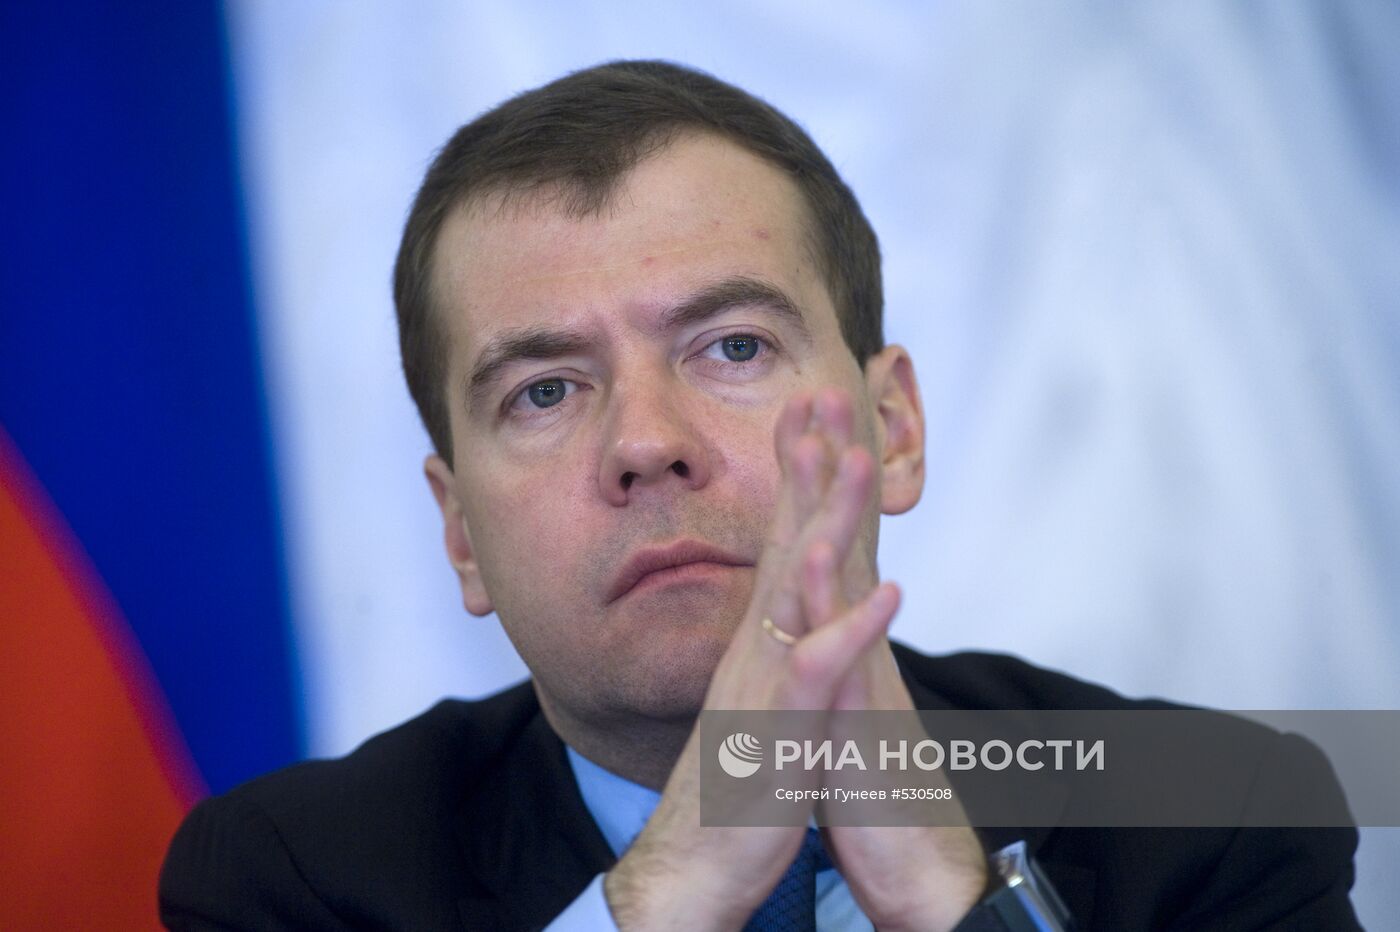 Д.Медведев встретился с руководством Российской академии наук